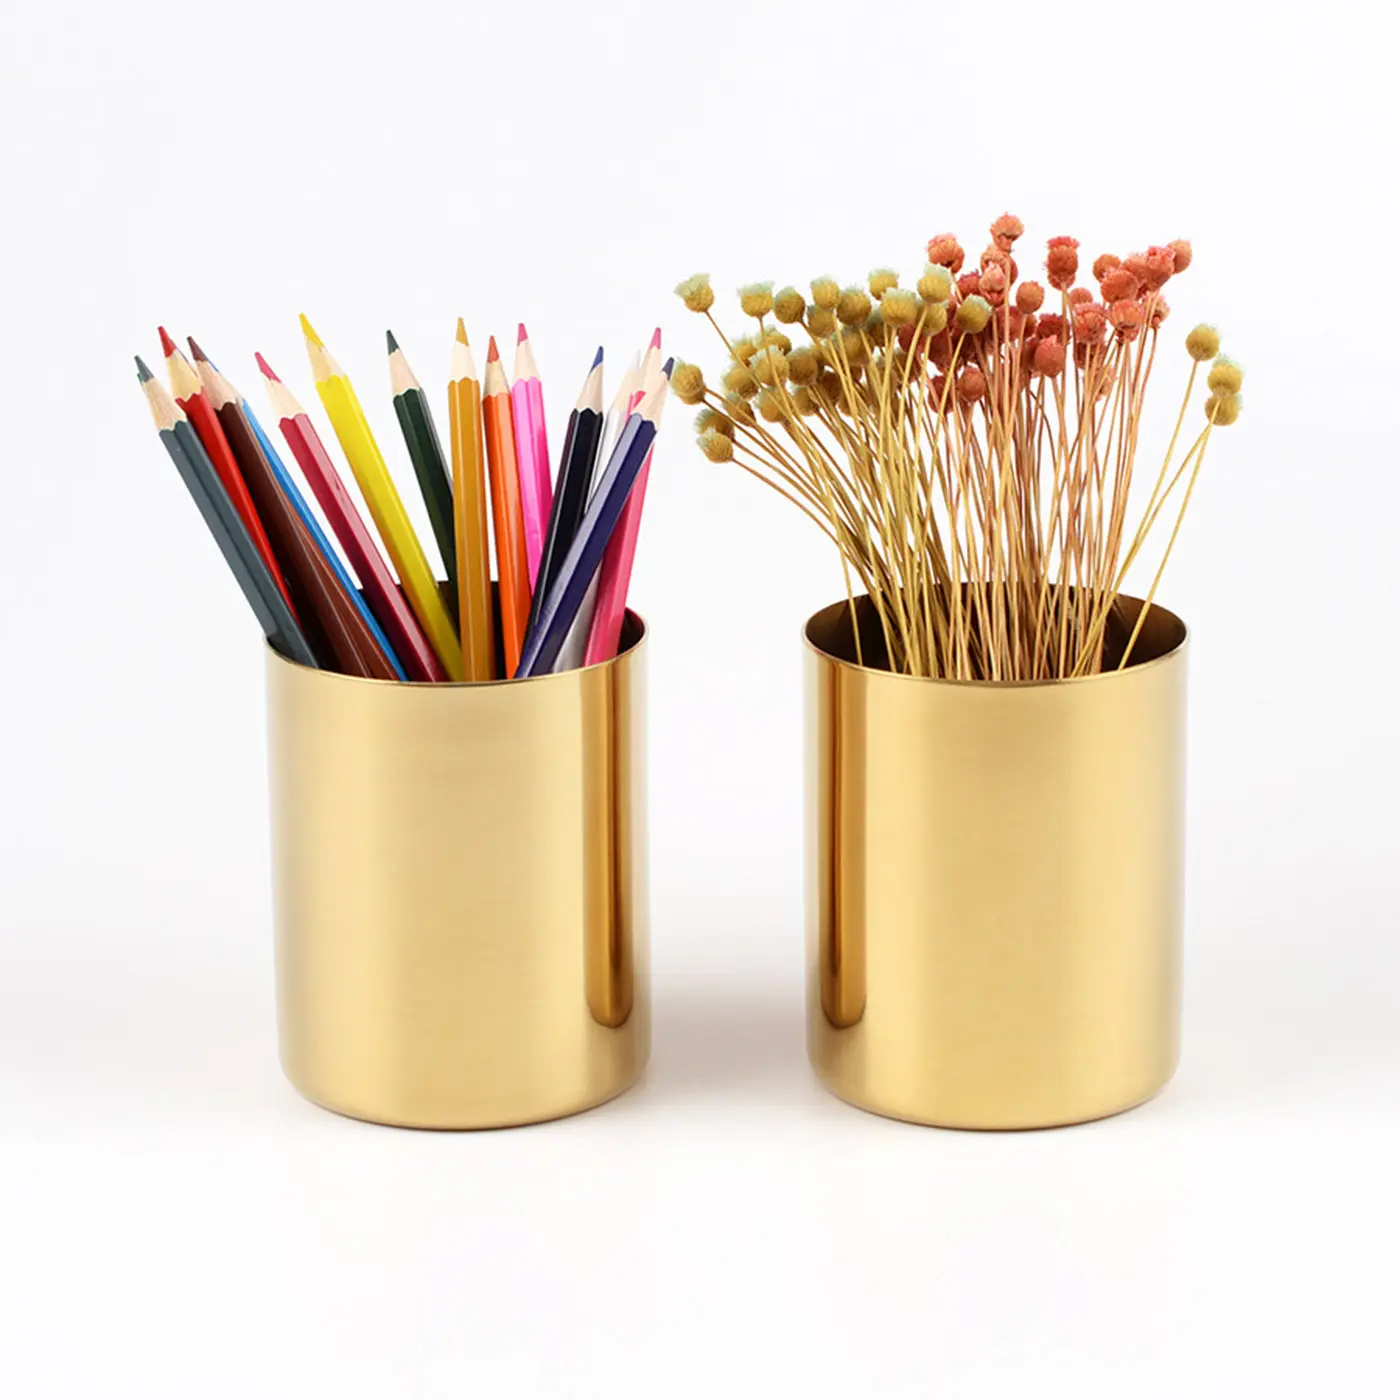 MAXERY Stainless Steel Desk Organizer, Gold Flower Pot Pen Holder Container Makeup Brush Holder Desktop Stationery Organizer